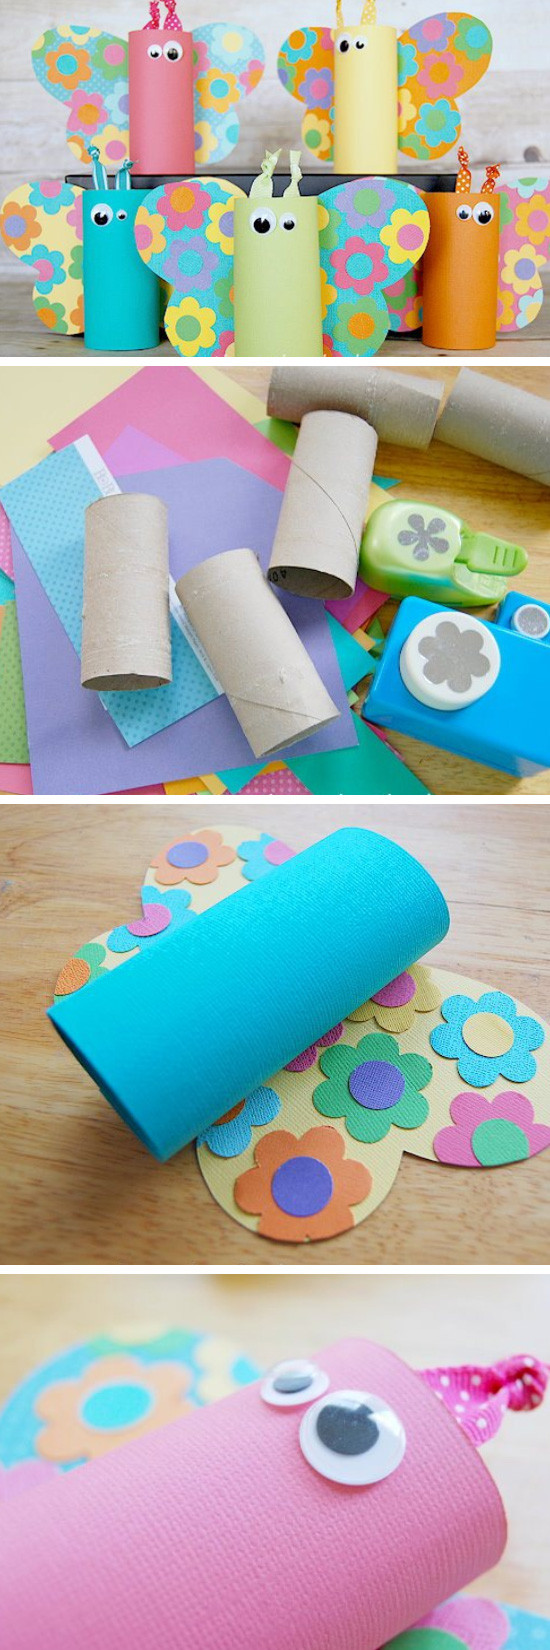 DIY Crafts For Toddlers
 22 DIY Spring Crafts for Kids to Make